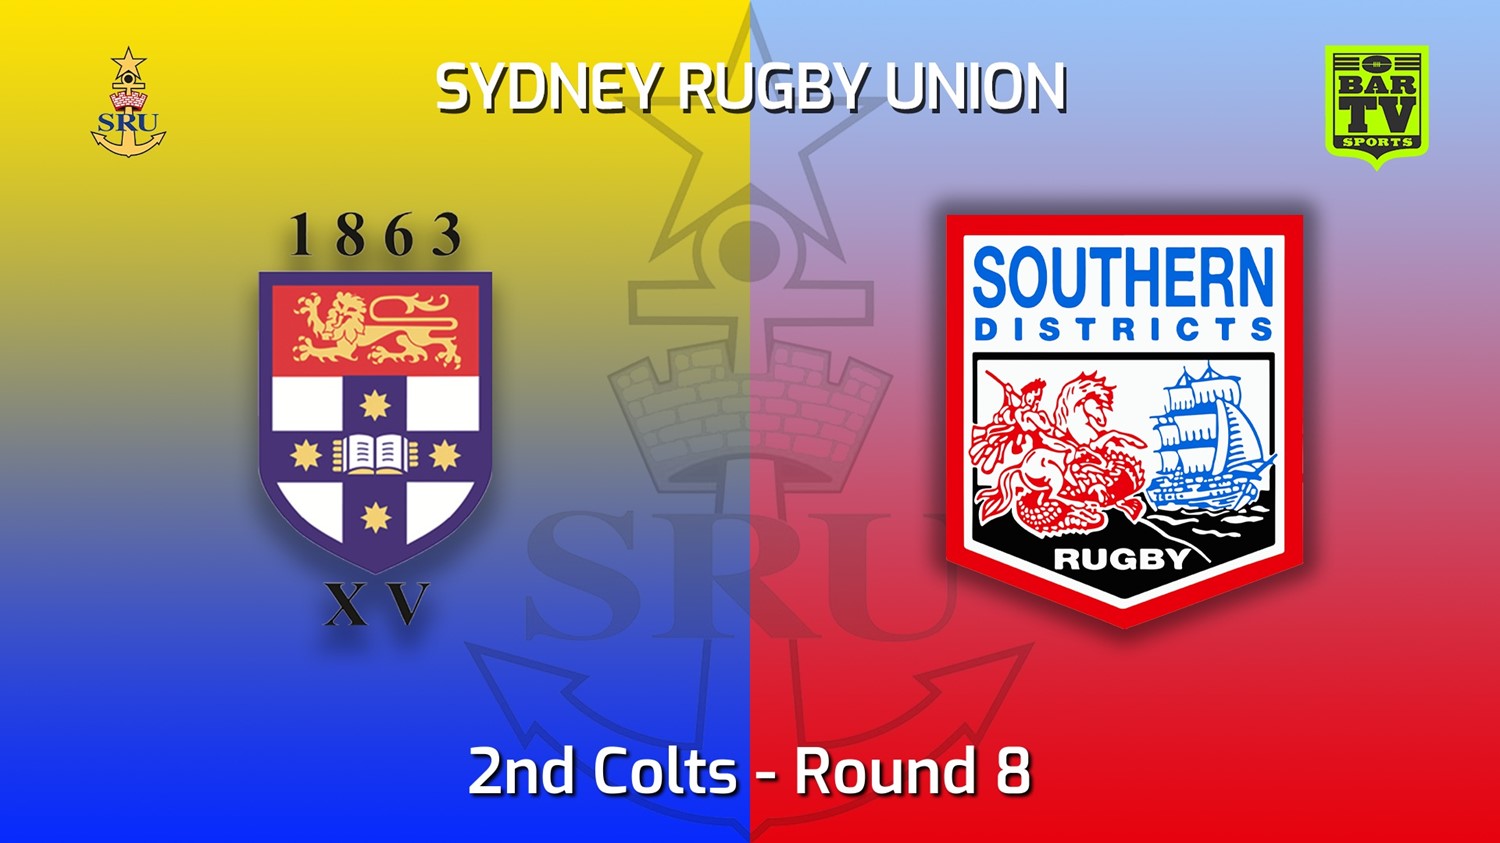 220521-Sydney Rugby Union Round 8 - 2nd Colts - Sydney University v Southern Districts Slate Image